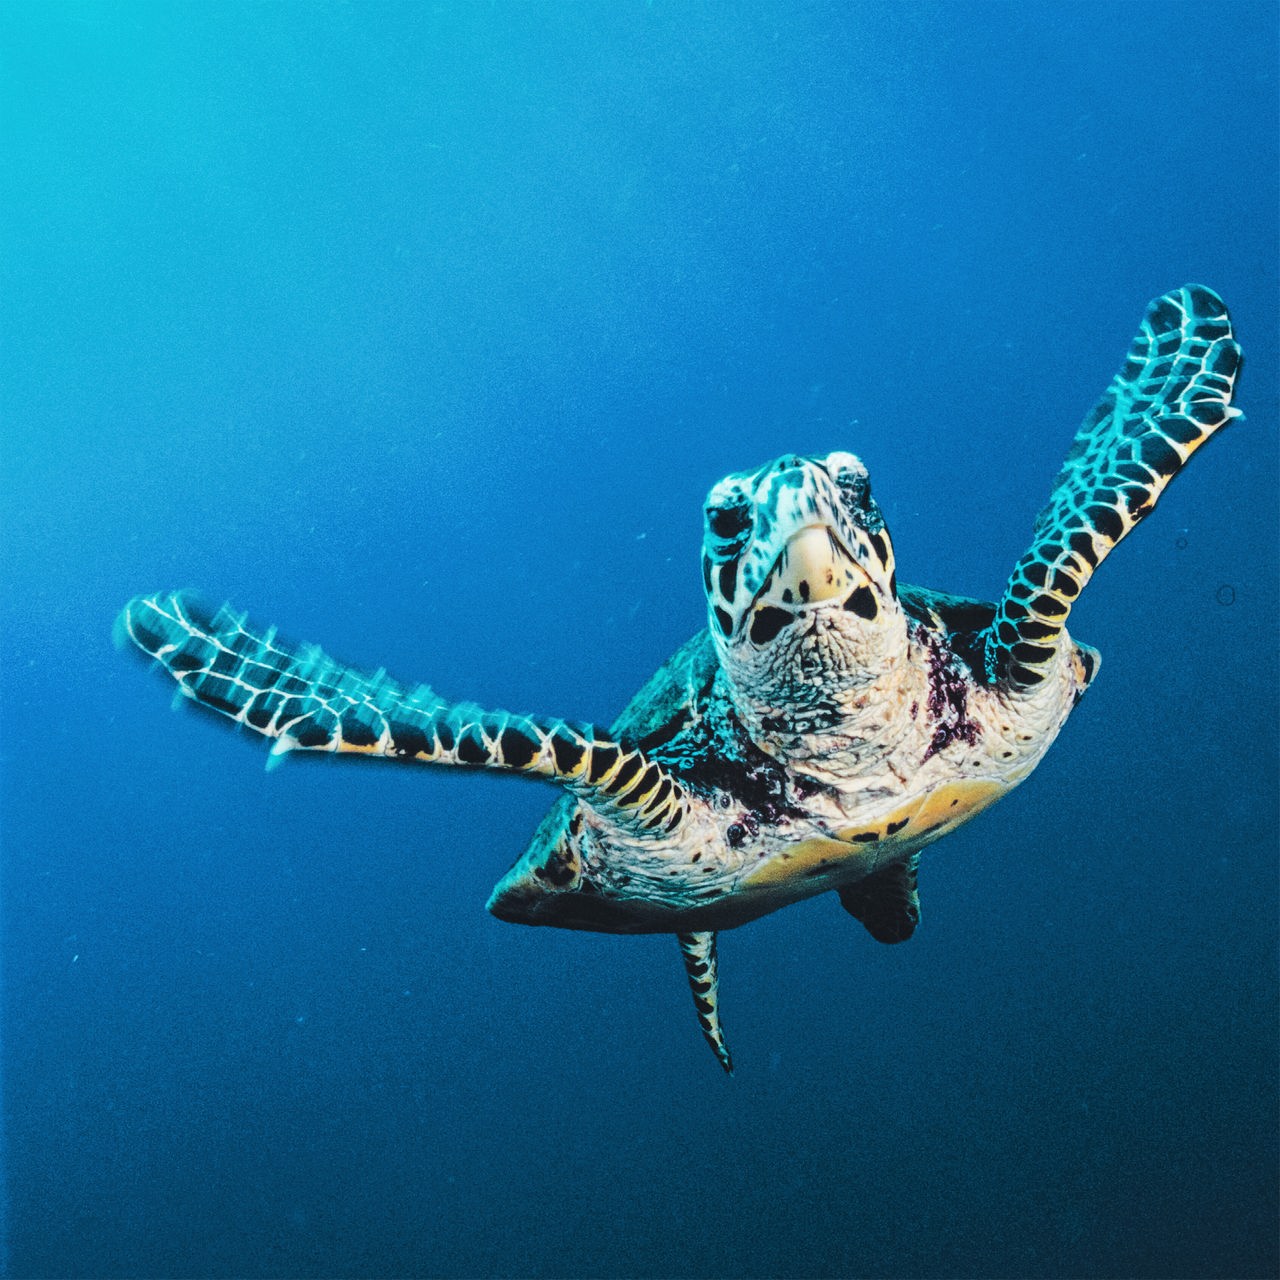 Eine Schildkröte mit weiß-schwarzer Musterung schwimmt unter Wasser durch einen Ozean, der als hell- bis dunkelblauer Hintergrund zu erkennen ist.